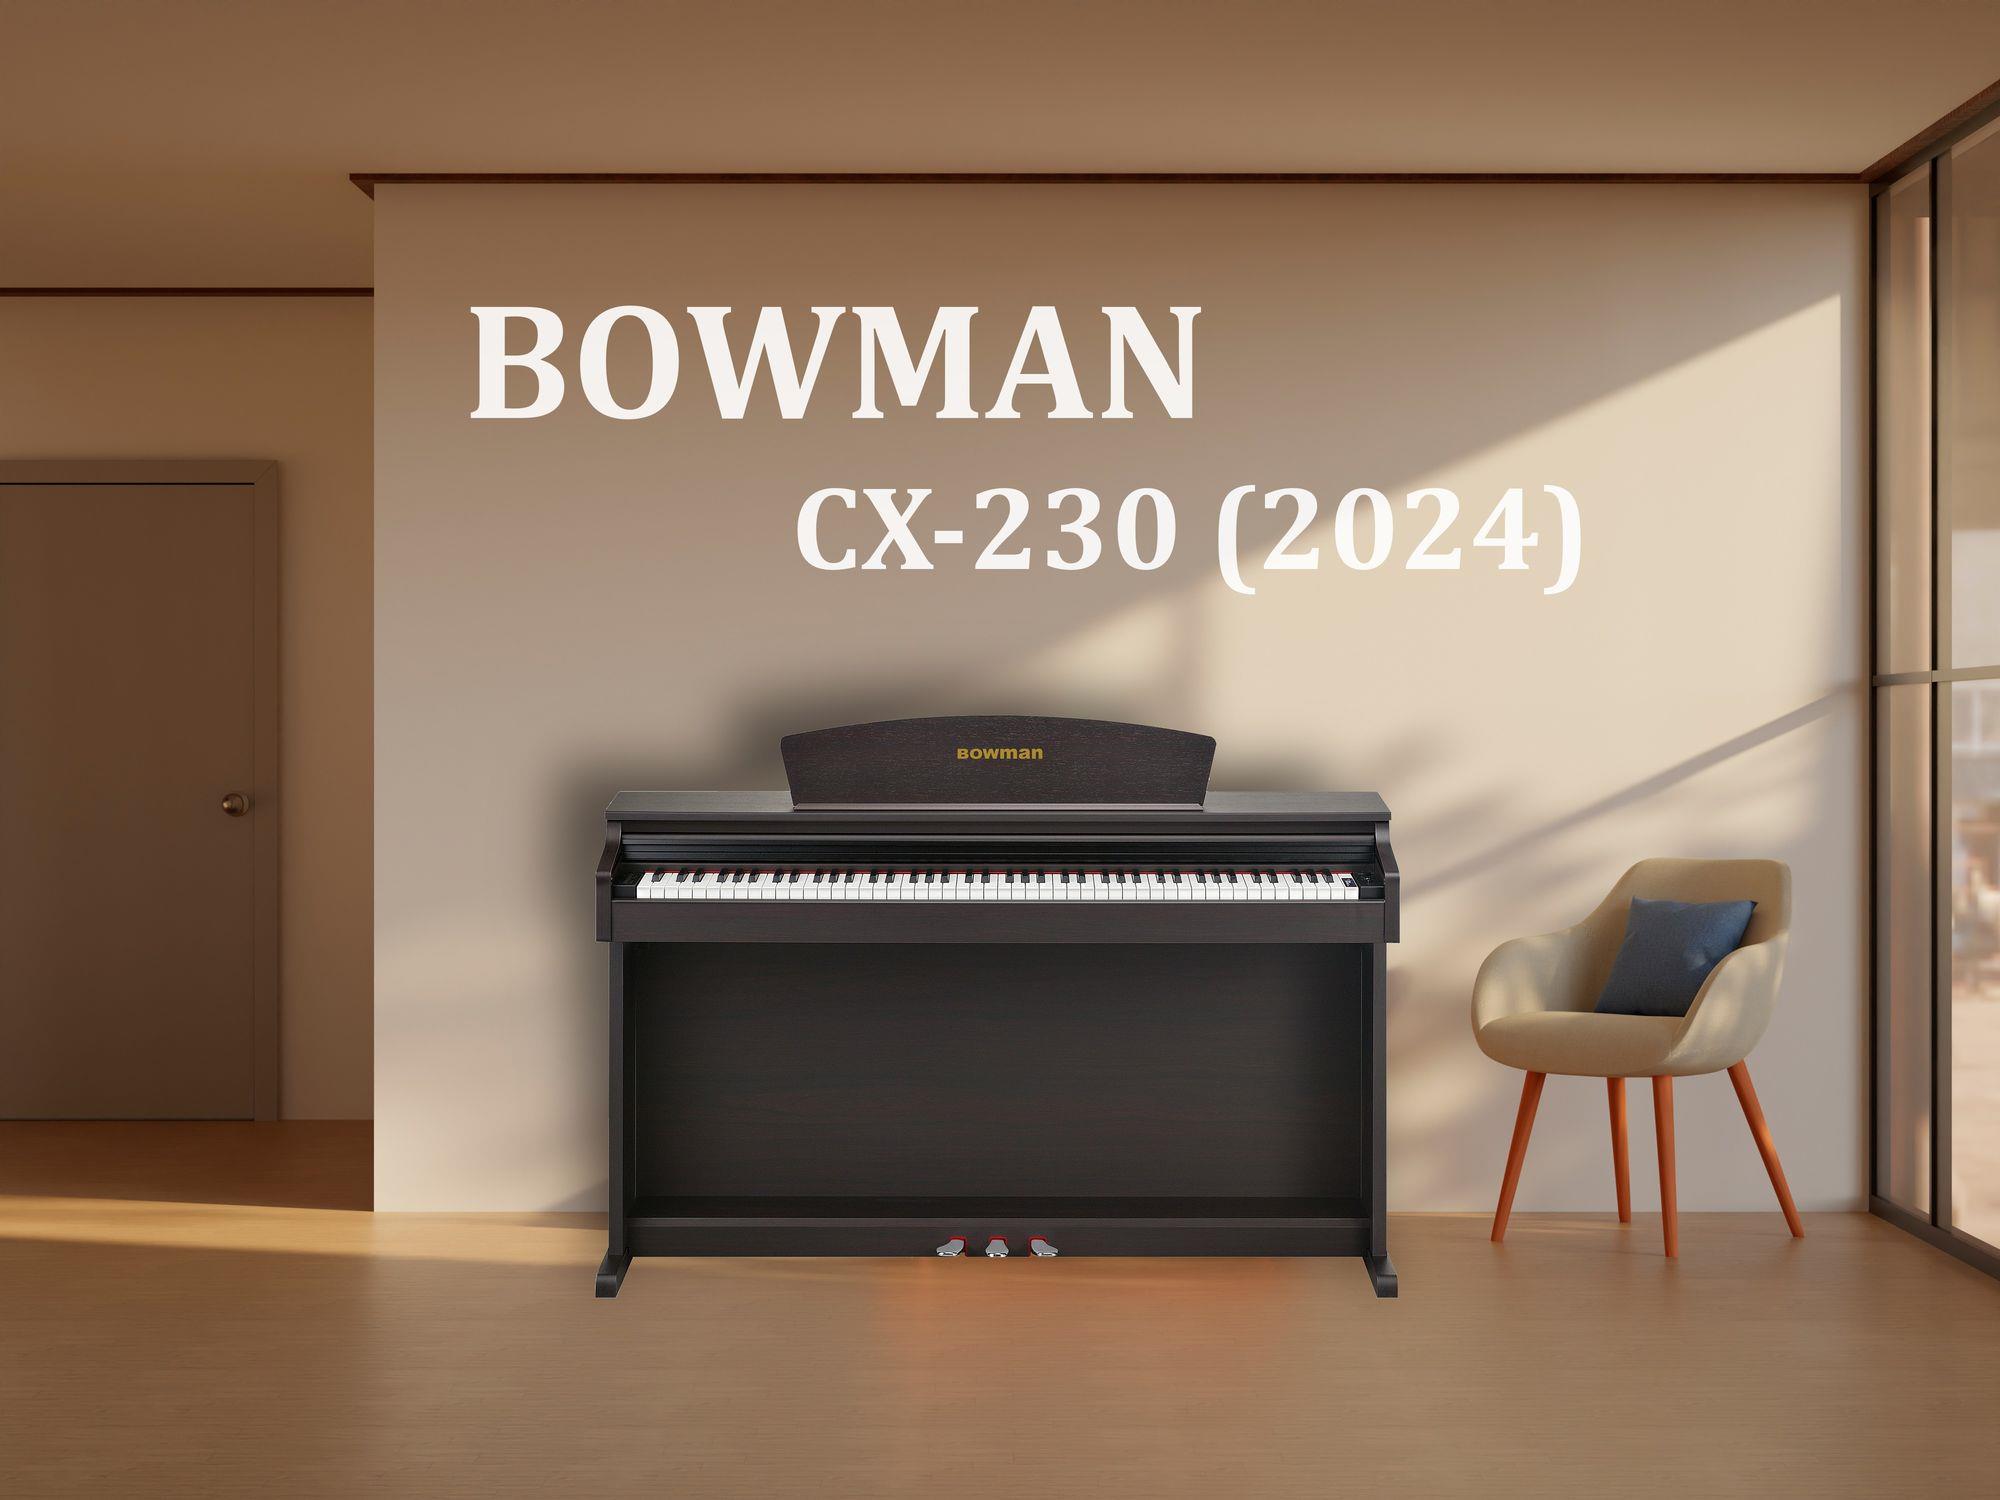 BOWMAN CX-230 SR (2024)